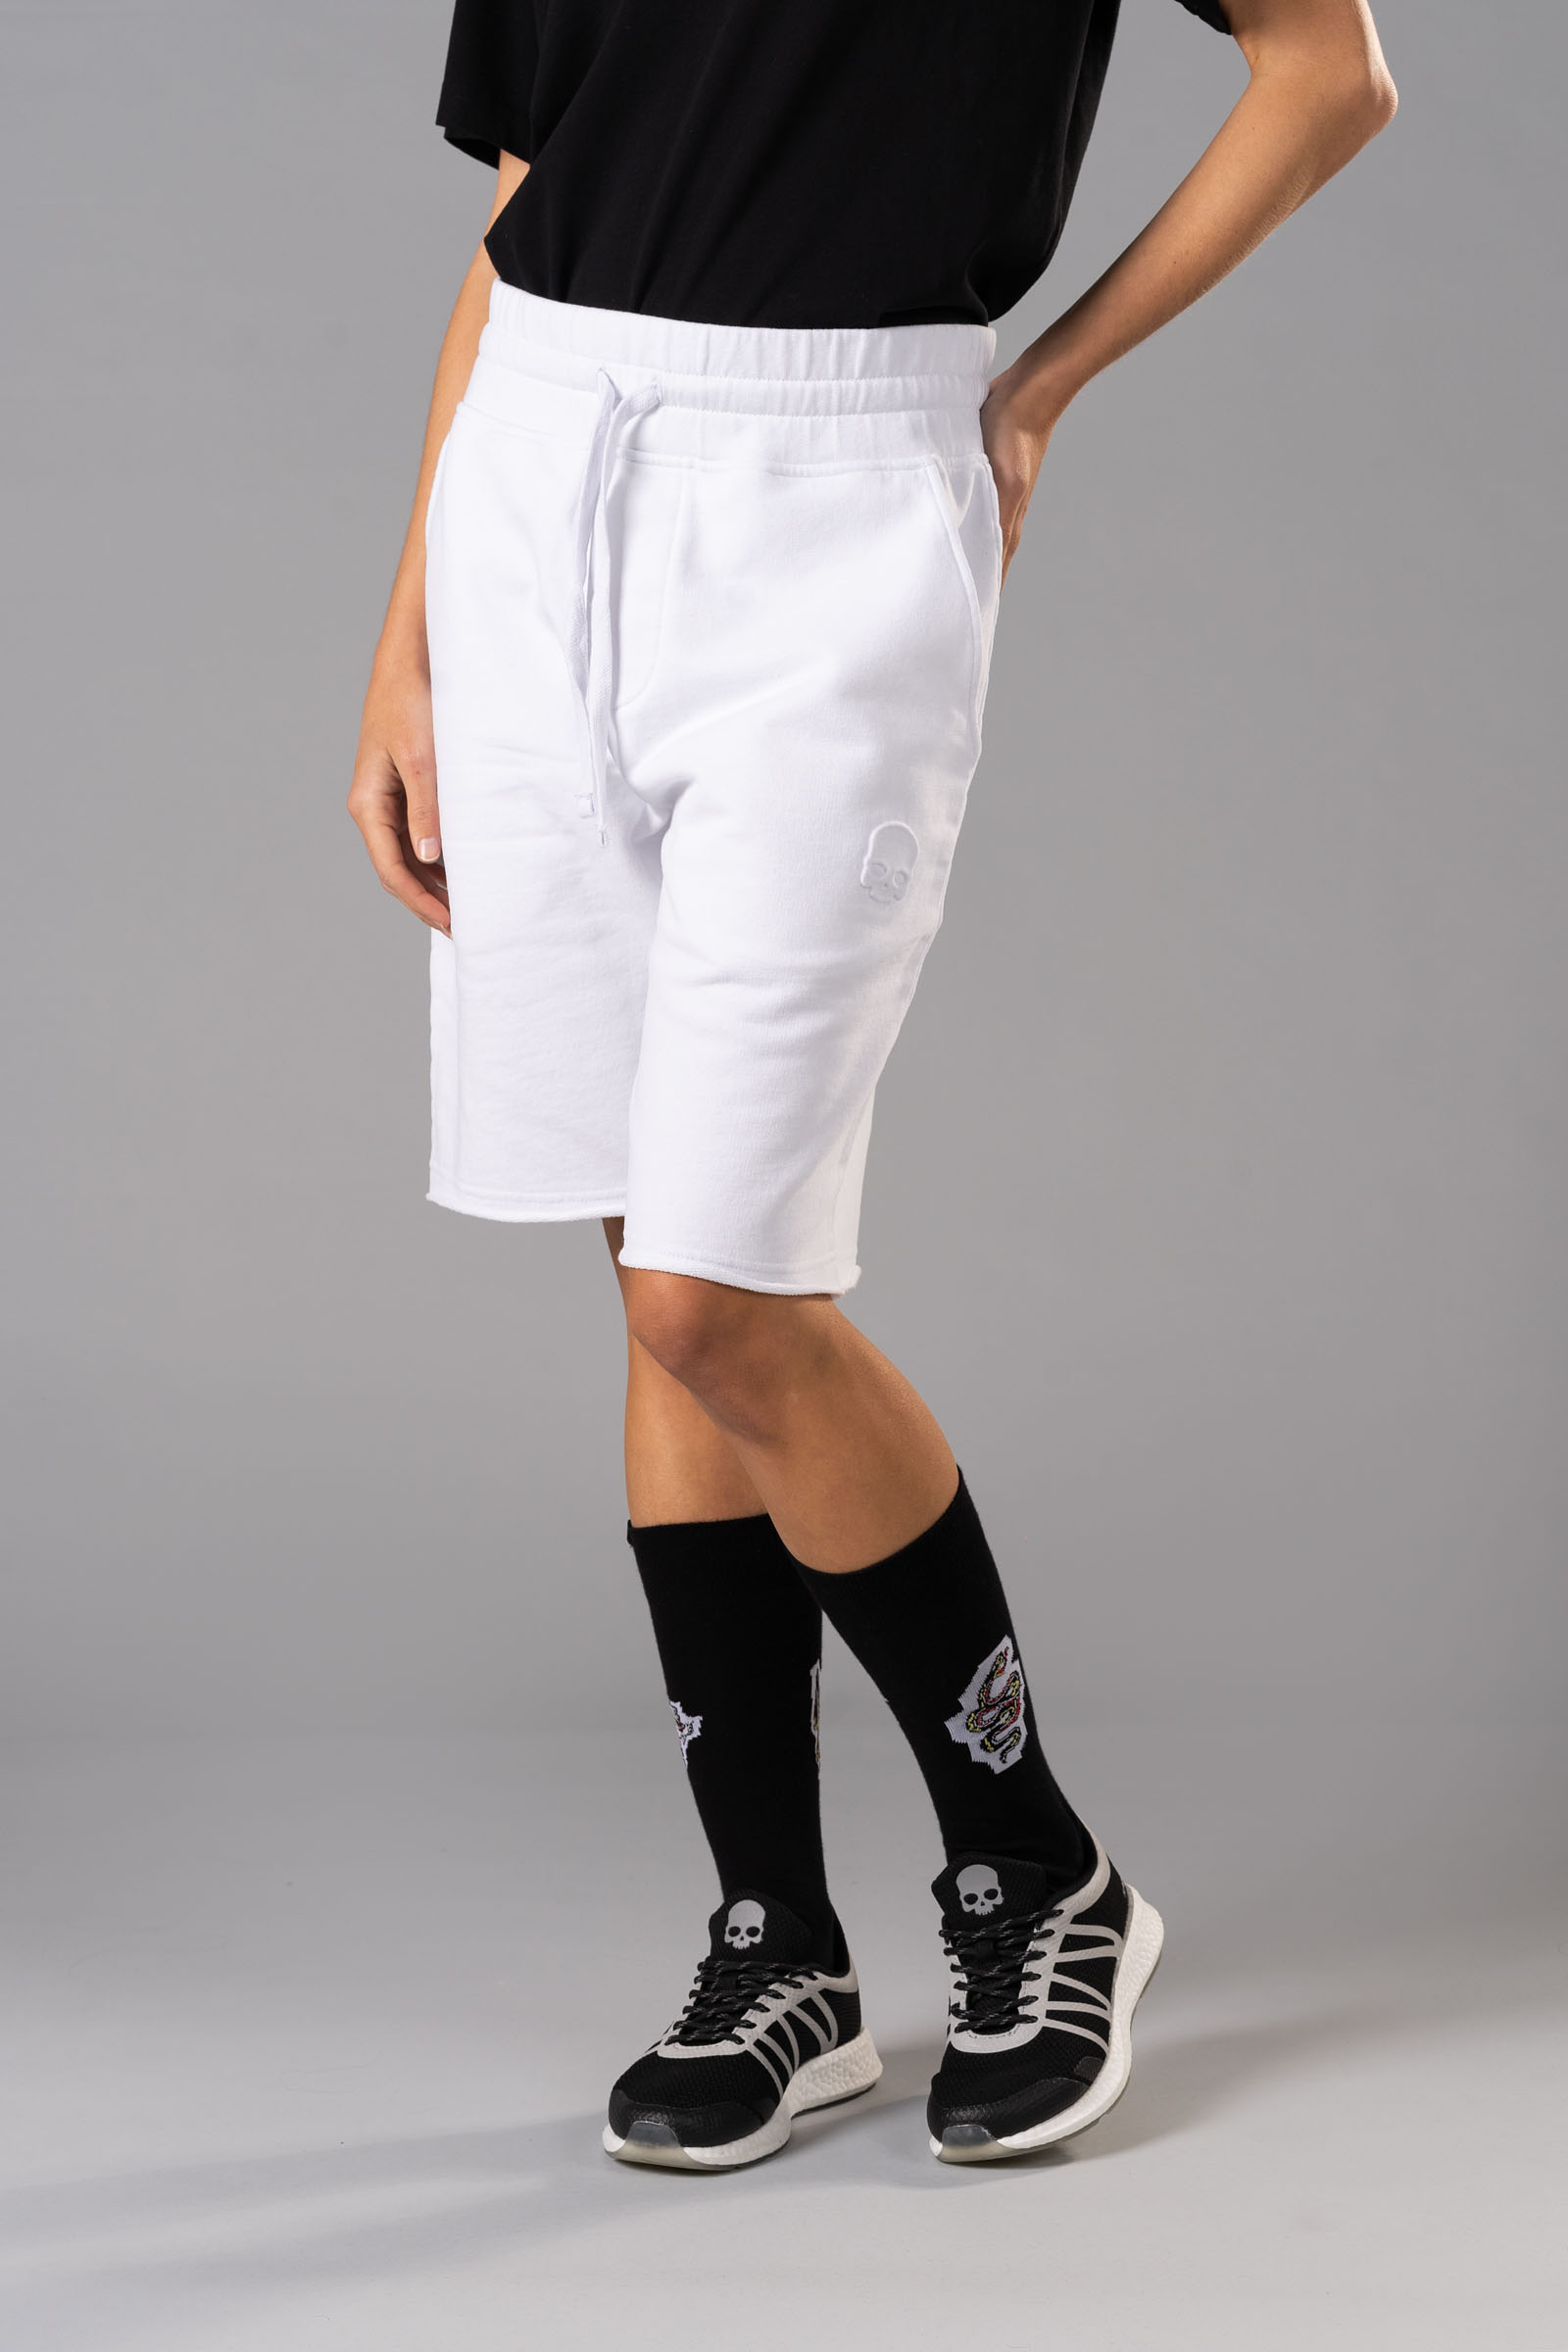 SKULL SHORTS - WHITE - Hydrogen - Luxury Sportwear